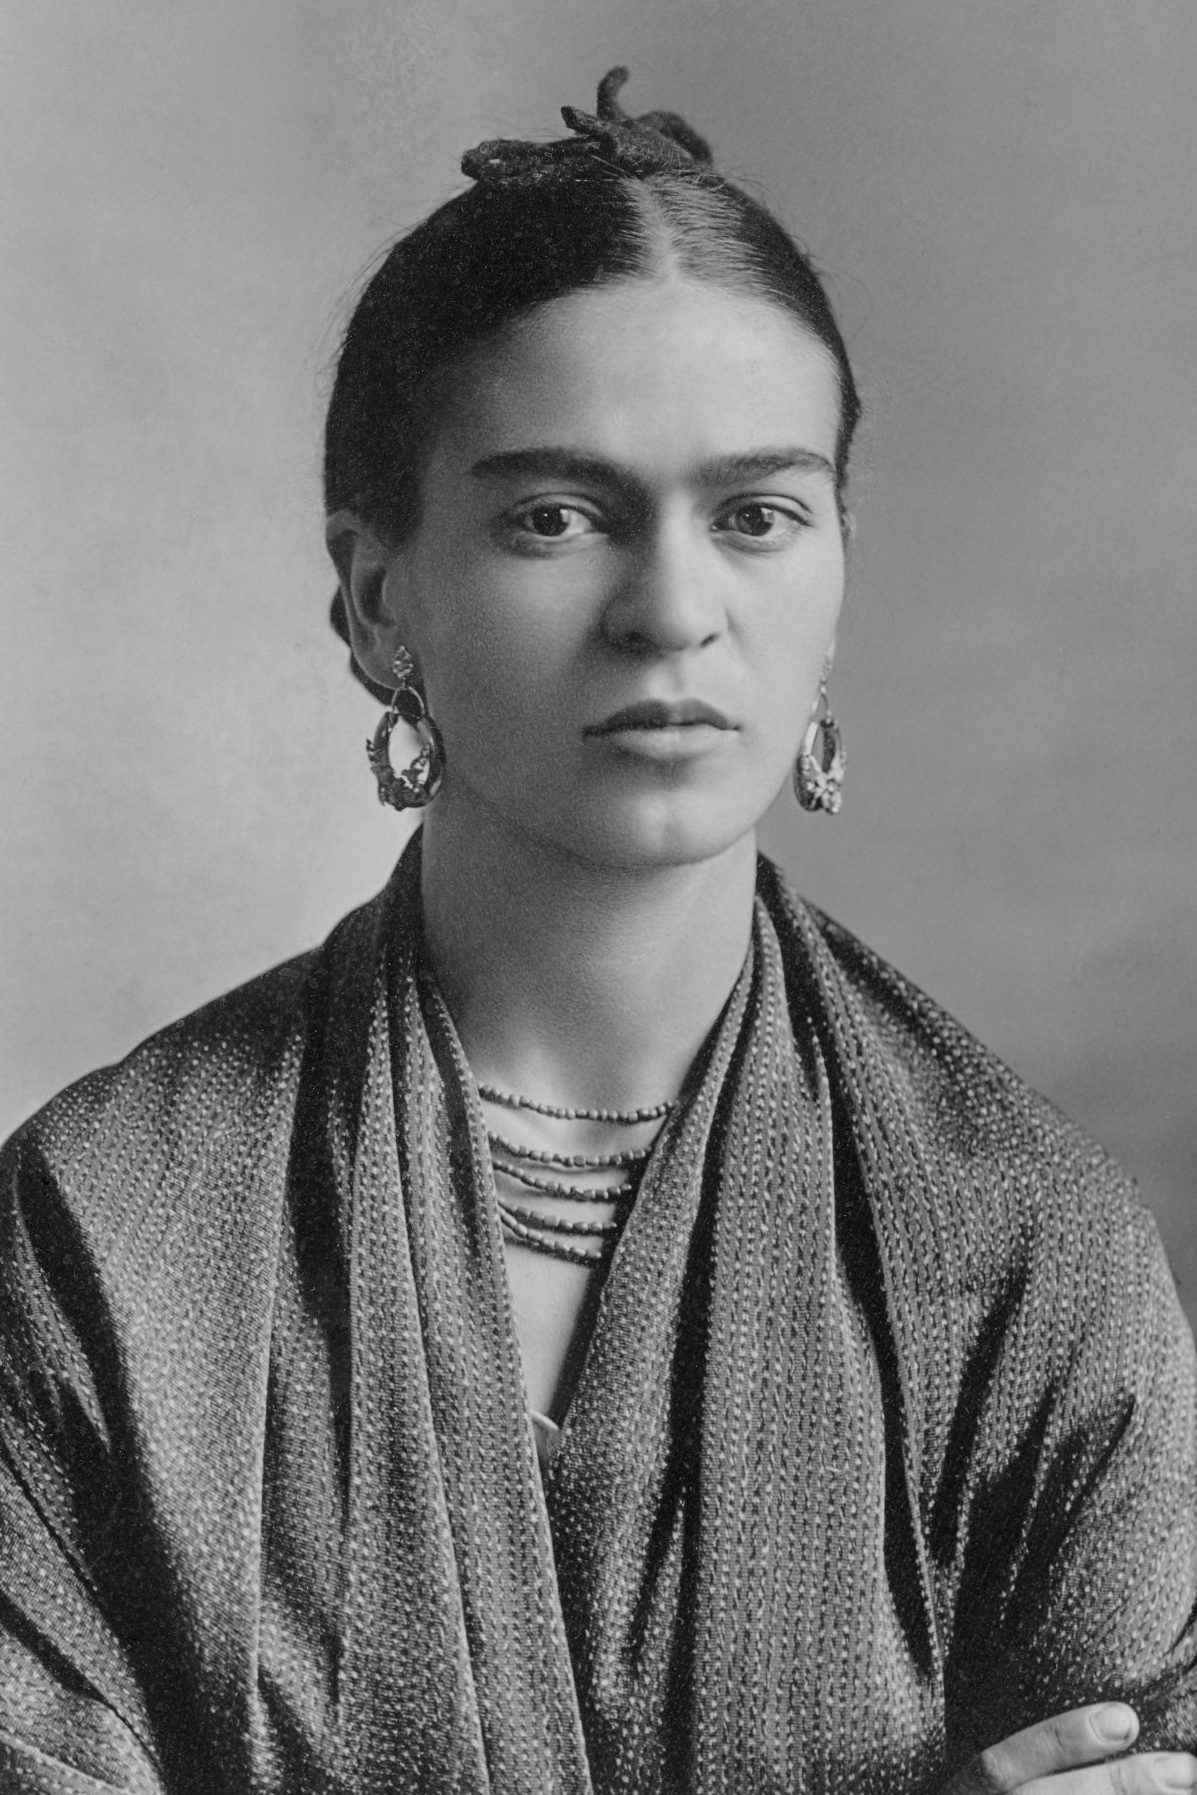 auteur Frida Kahlo de la citation Je t'aime plus que ma propre peau et même si tu ne m'aimes pas de la même manière, tu m'aimes de toute façon, n'est-ce pas? Et si vous ne le faites pas, j'aurai toujours l'espoir que vous fassiez, et je suis satisfait de cela. Aime-moi un peu. Je t'adore.